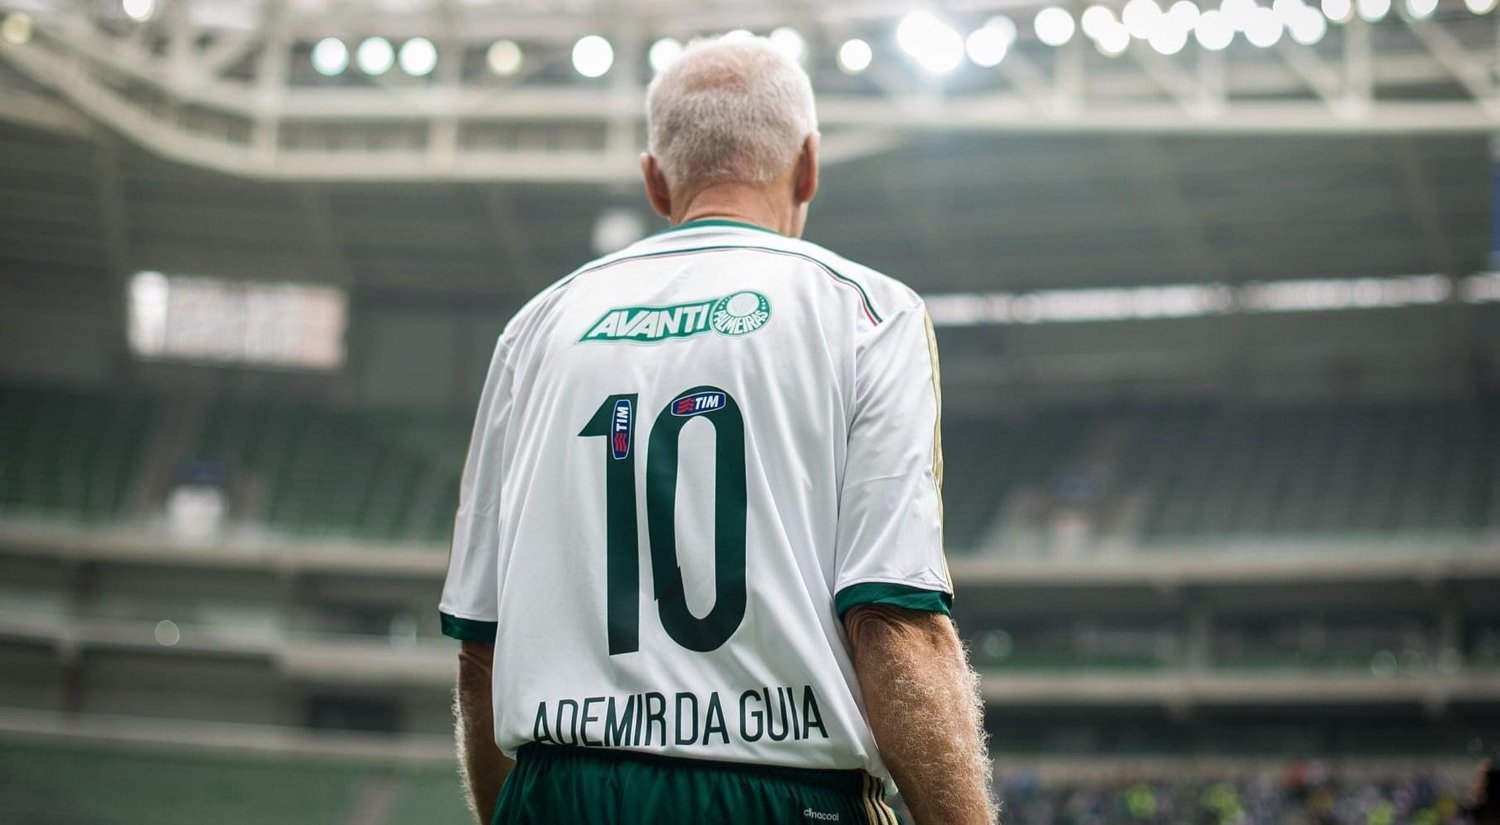 No dia em que completa 80 anos, Ademir da Guia levará a taça do Campeonato Paulista ao Allianz